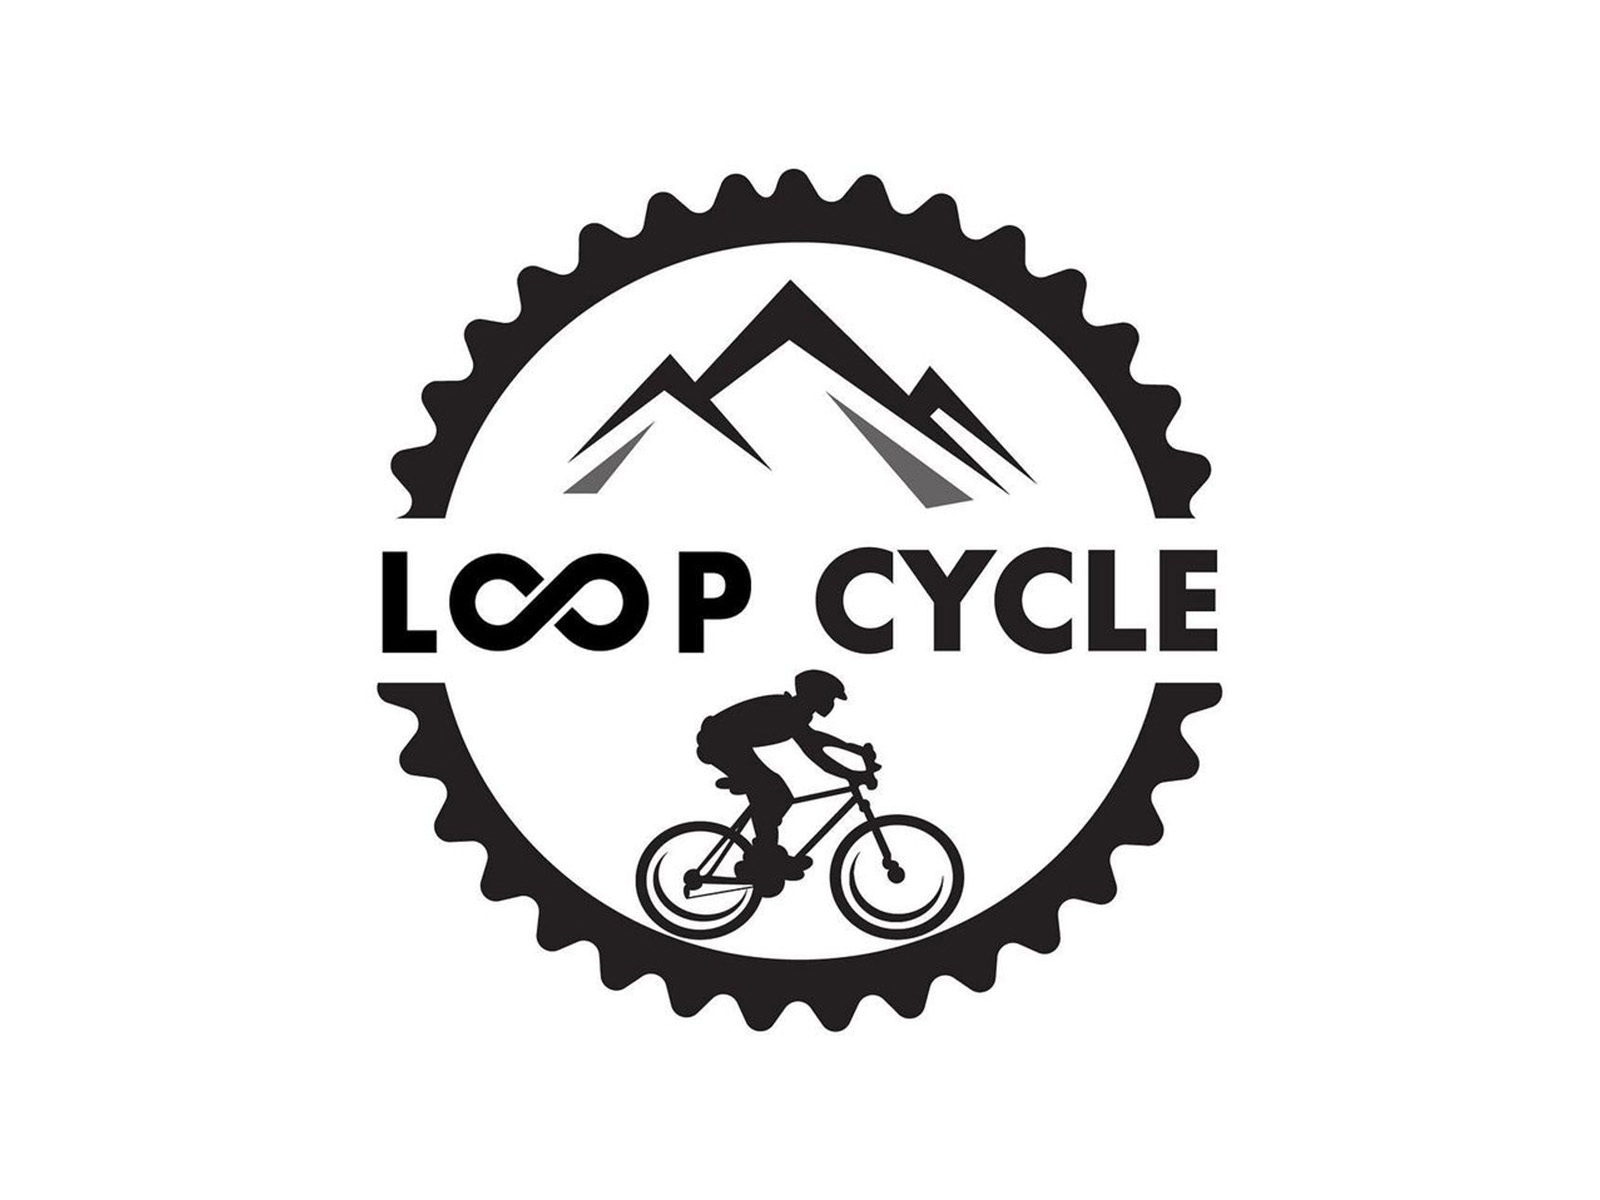 Loop Cycle by Dinesh Maharjan on Dribbble